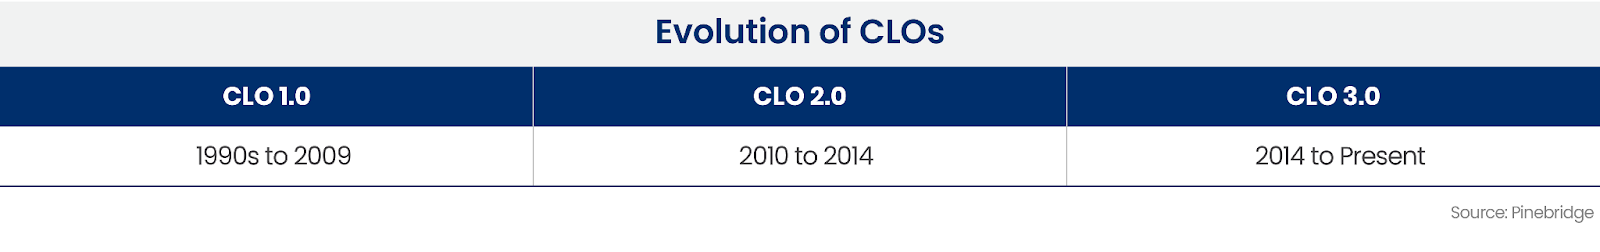 Evolution of CLOs